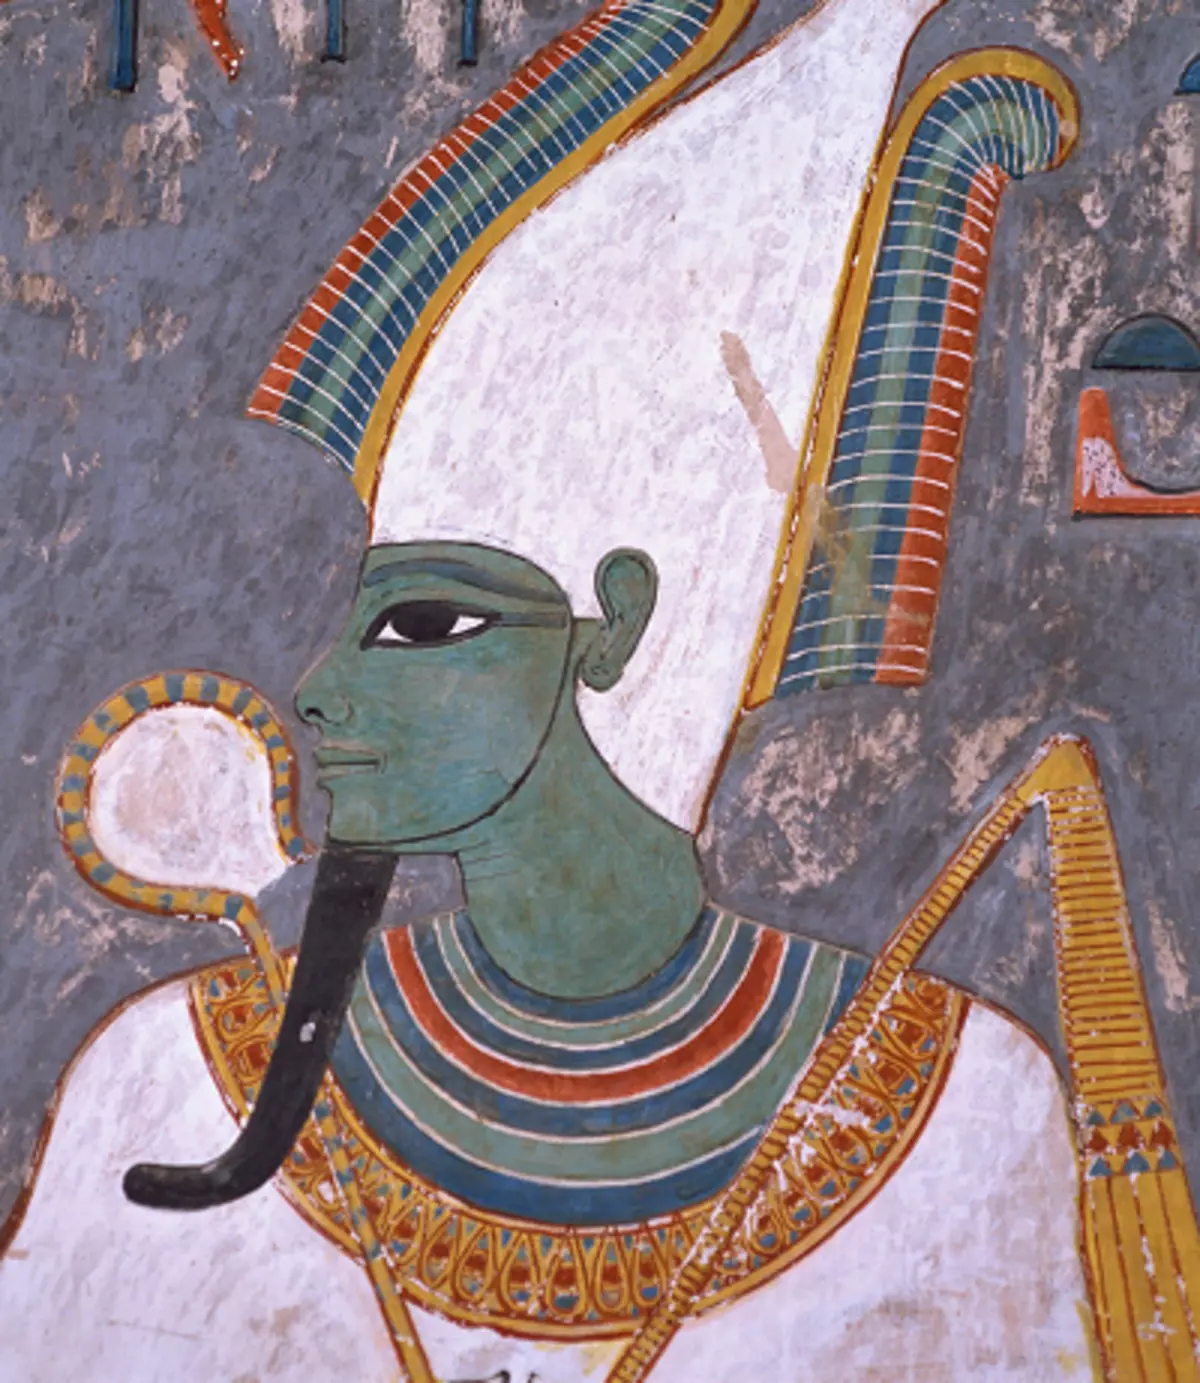 Դաջվածք «Եգիպտական ​​աստվածներ». Օսիրիսը, ՀՀ-ն, Եգիպտոսի լեռները եւ այլ աստվածներ, դաջվածքների էսքիզներ եւ դրանց իմաստը: Դաջվածք ուսի վրա, նախաբազուկի եւ մարմնի այլ մասերի վրա 14016_23